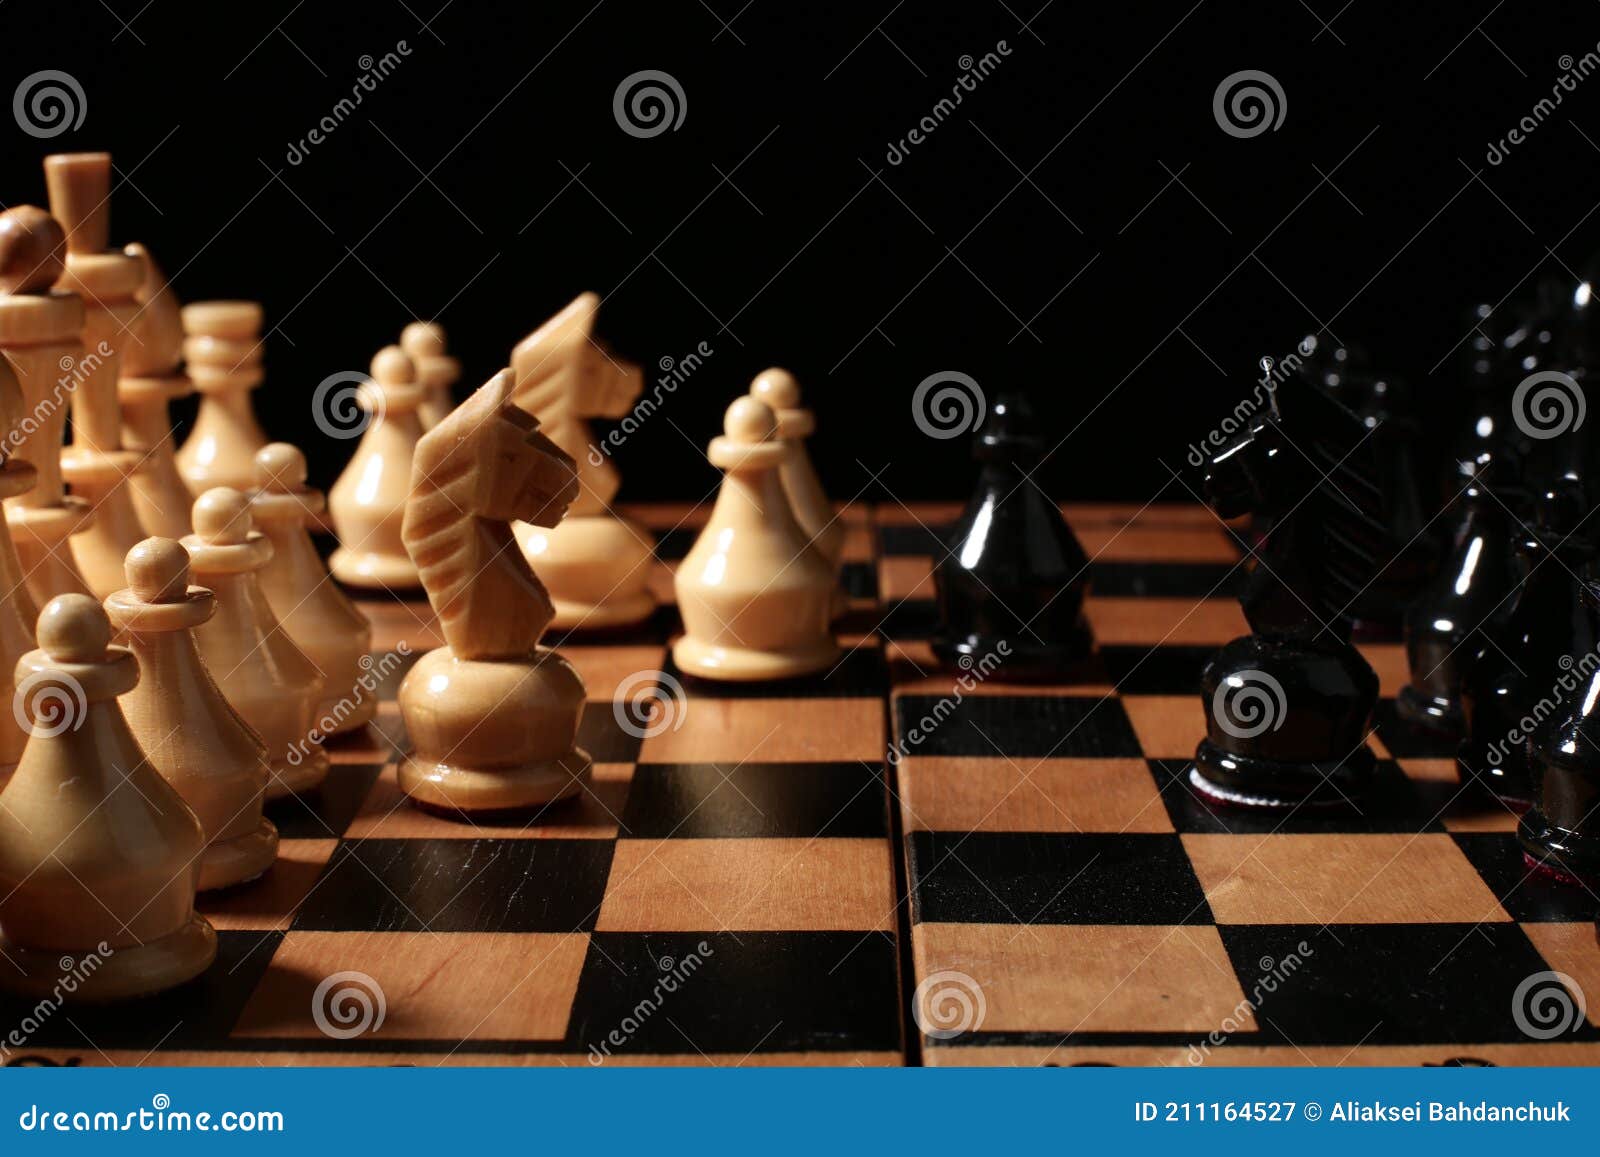 Peças De Xadrez De Madeira No Tabuleiro Imagem de Stock - Imagem de xadrez,  derrota: 211164527